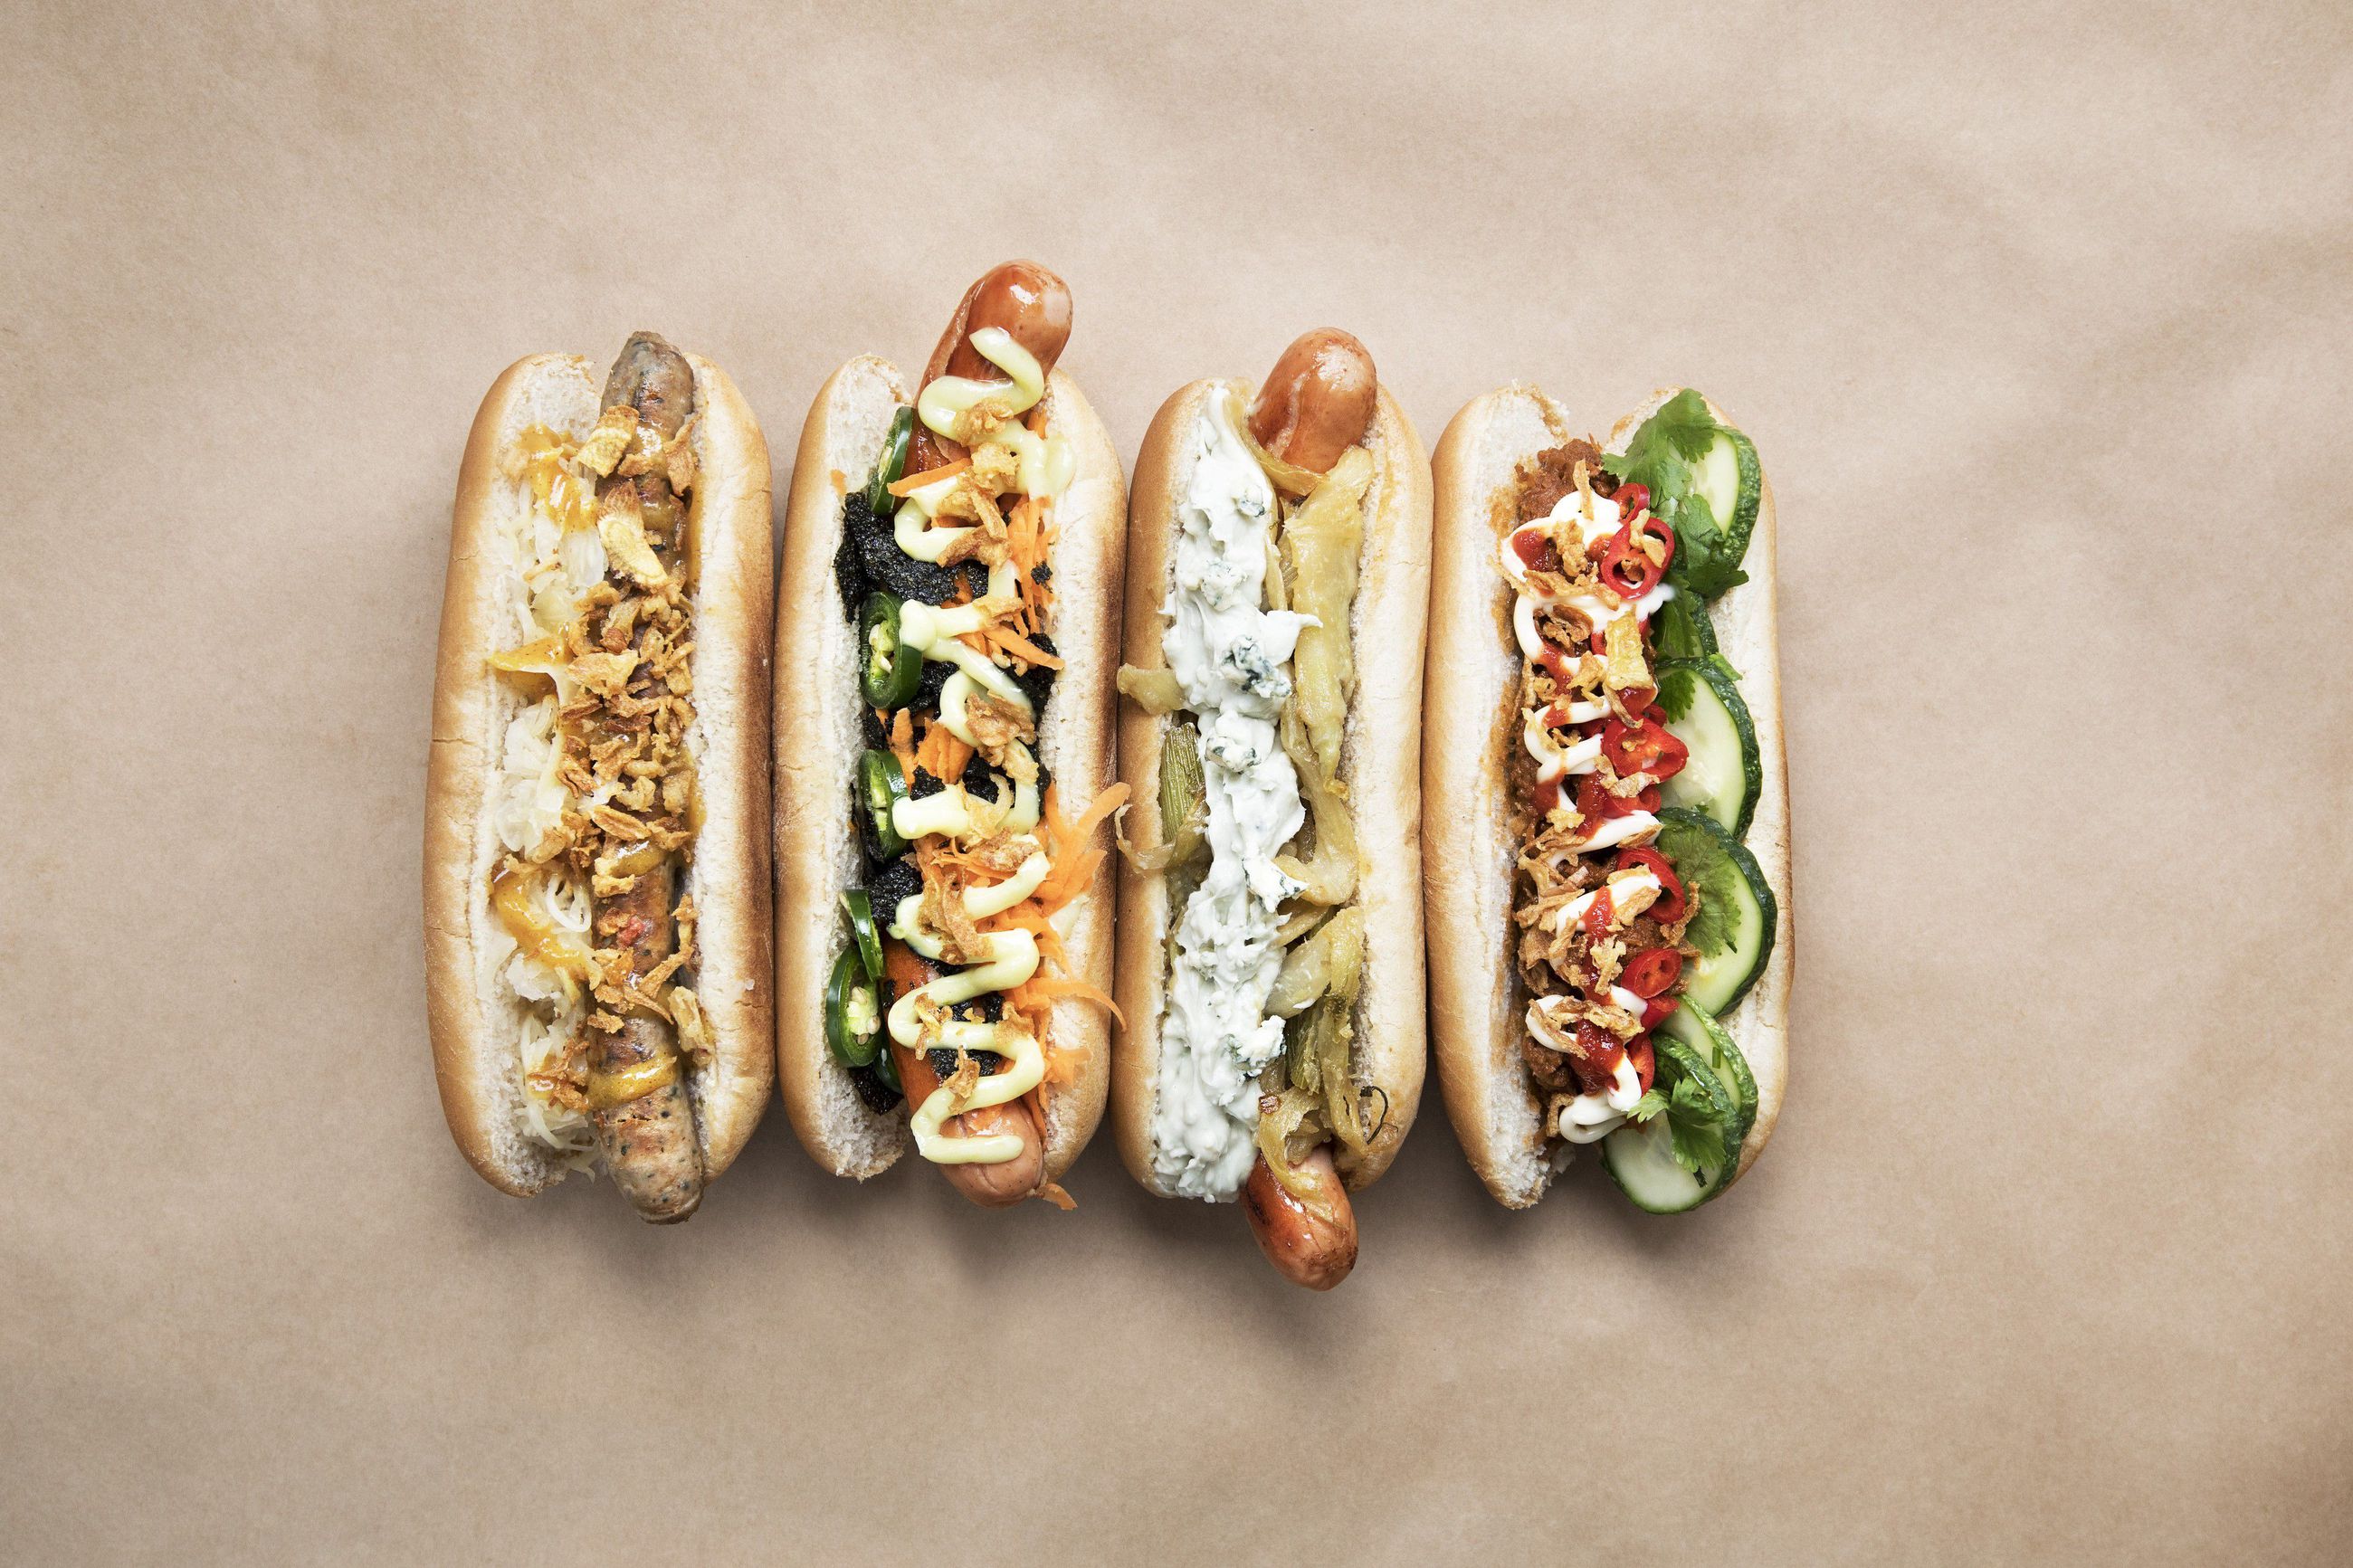 Herkku-heinäkuu: Lähde makumatkalle maailmalle – kutsu ystäväsi nauttimaan  hotdogeja aasialaiseen ja eurooppalaiseen tyyliin | Kaleva